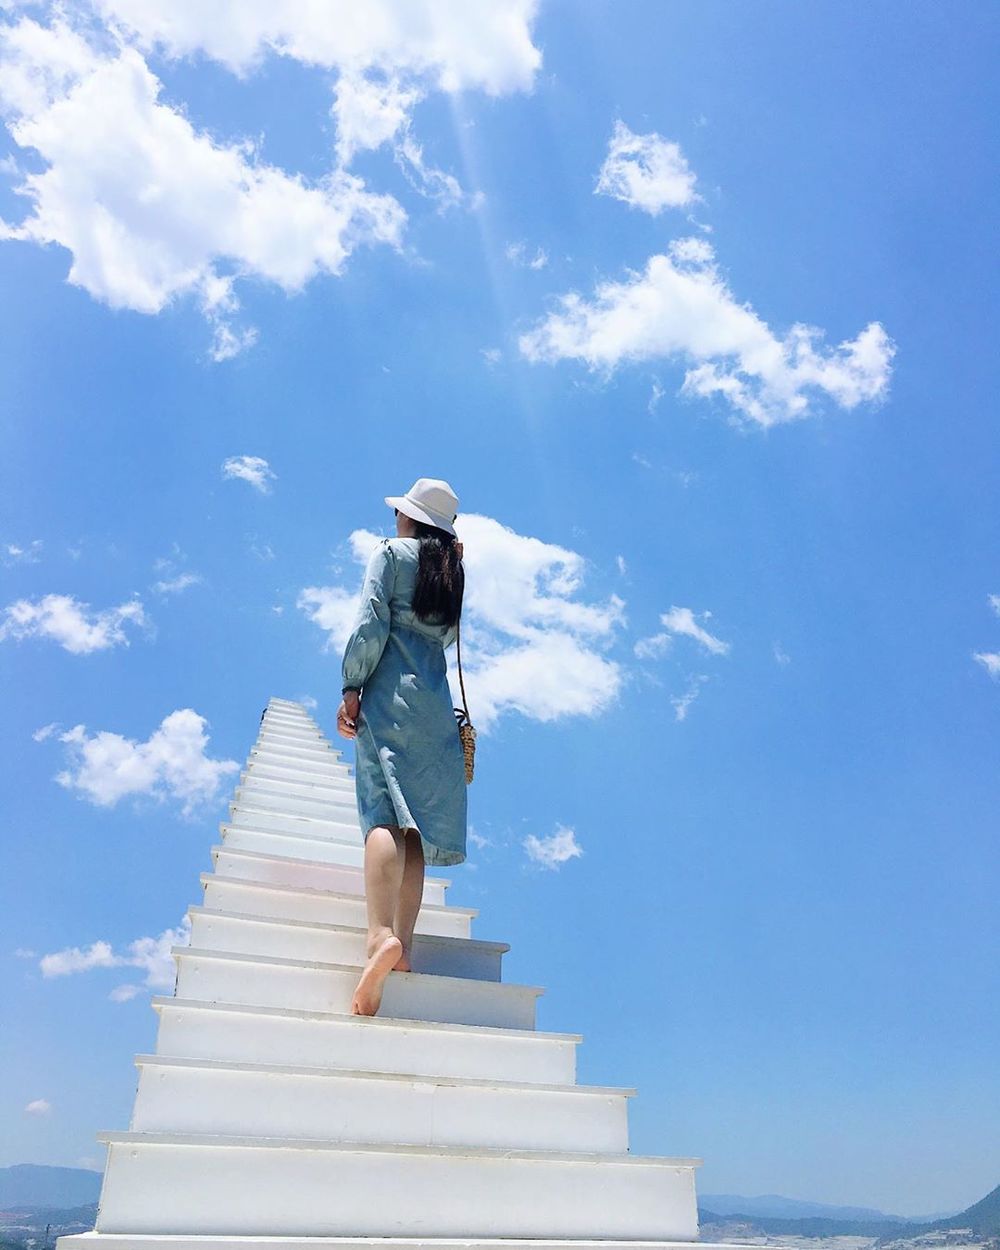  
"Cầu thang vô cực" ở Đà Lạt lọt top những chiếc cầu thang sống ảo đẹp nhất thế giới (Ảnh: Instagram dangngocnhungorder)